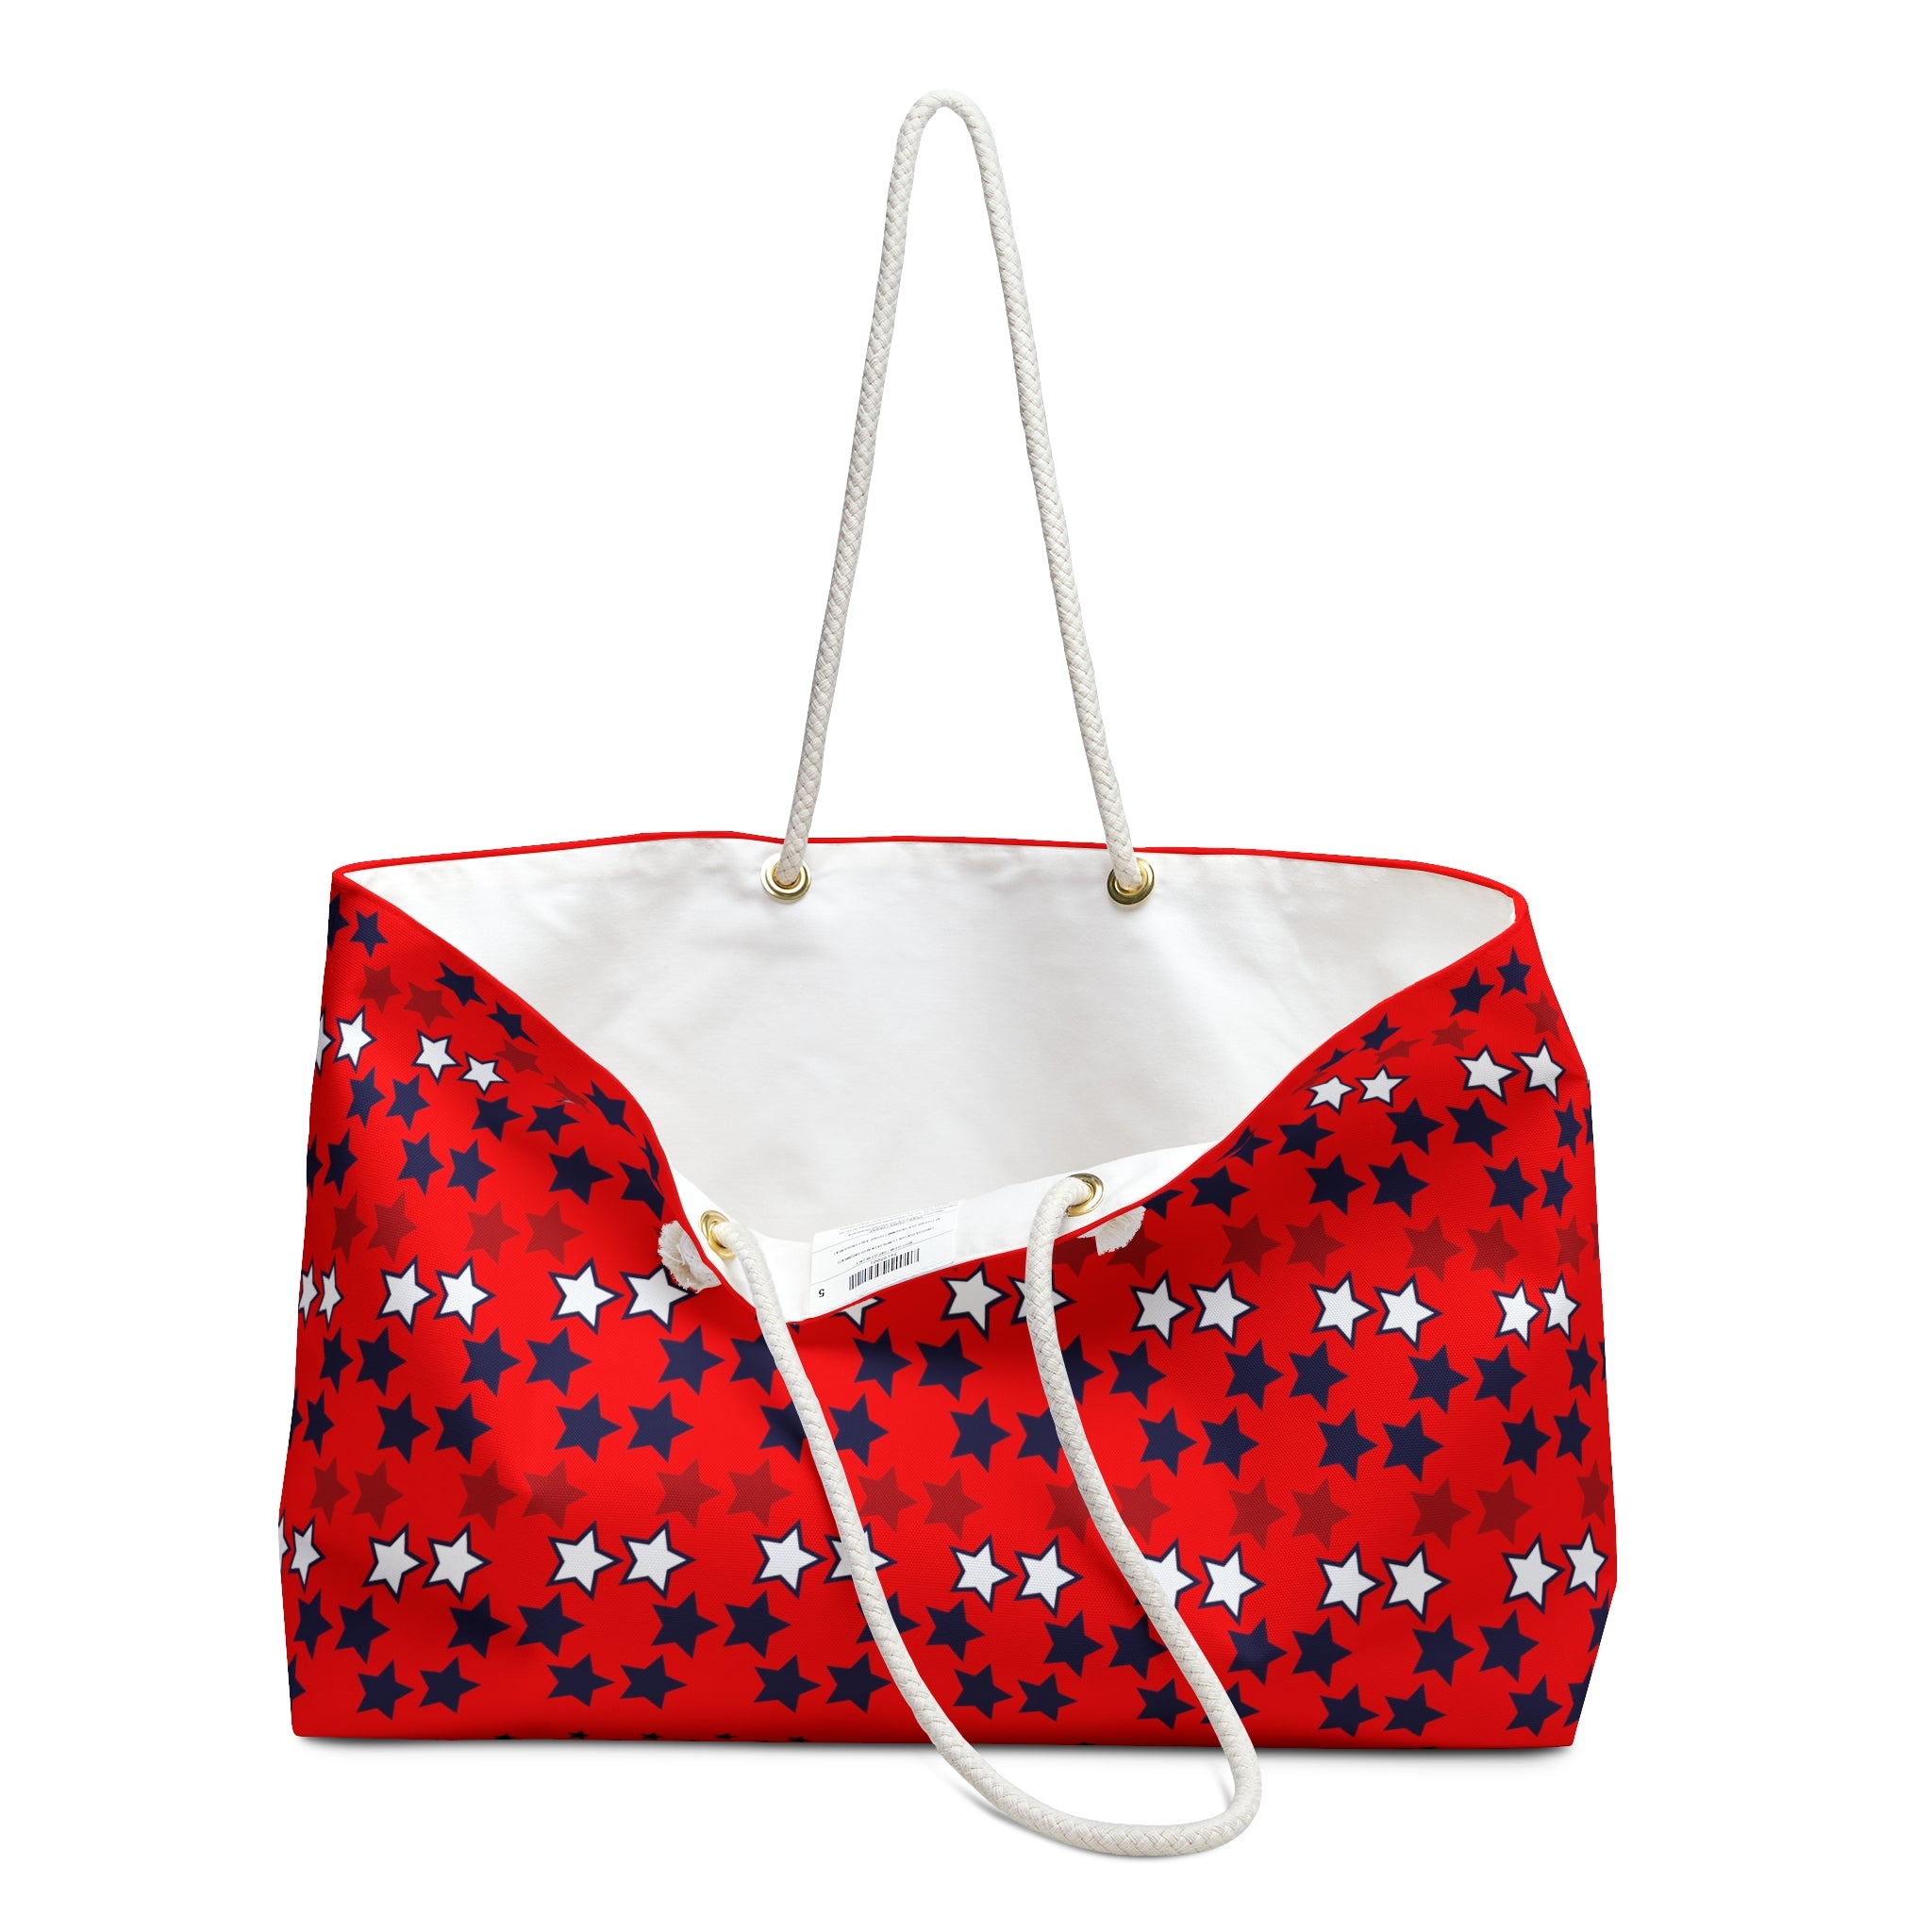 Red Starry Weekender Tote Bag